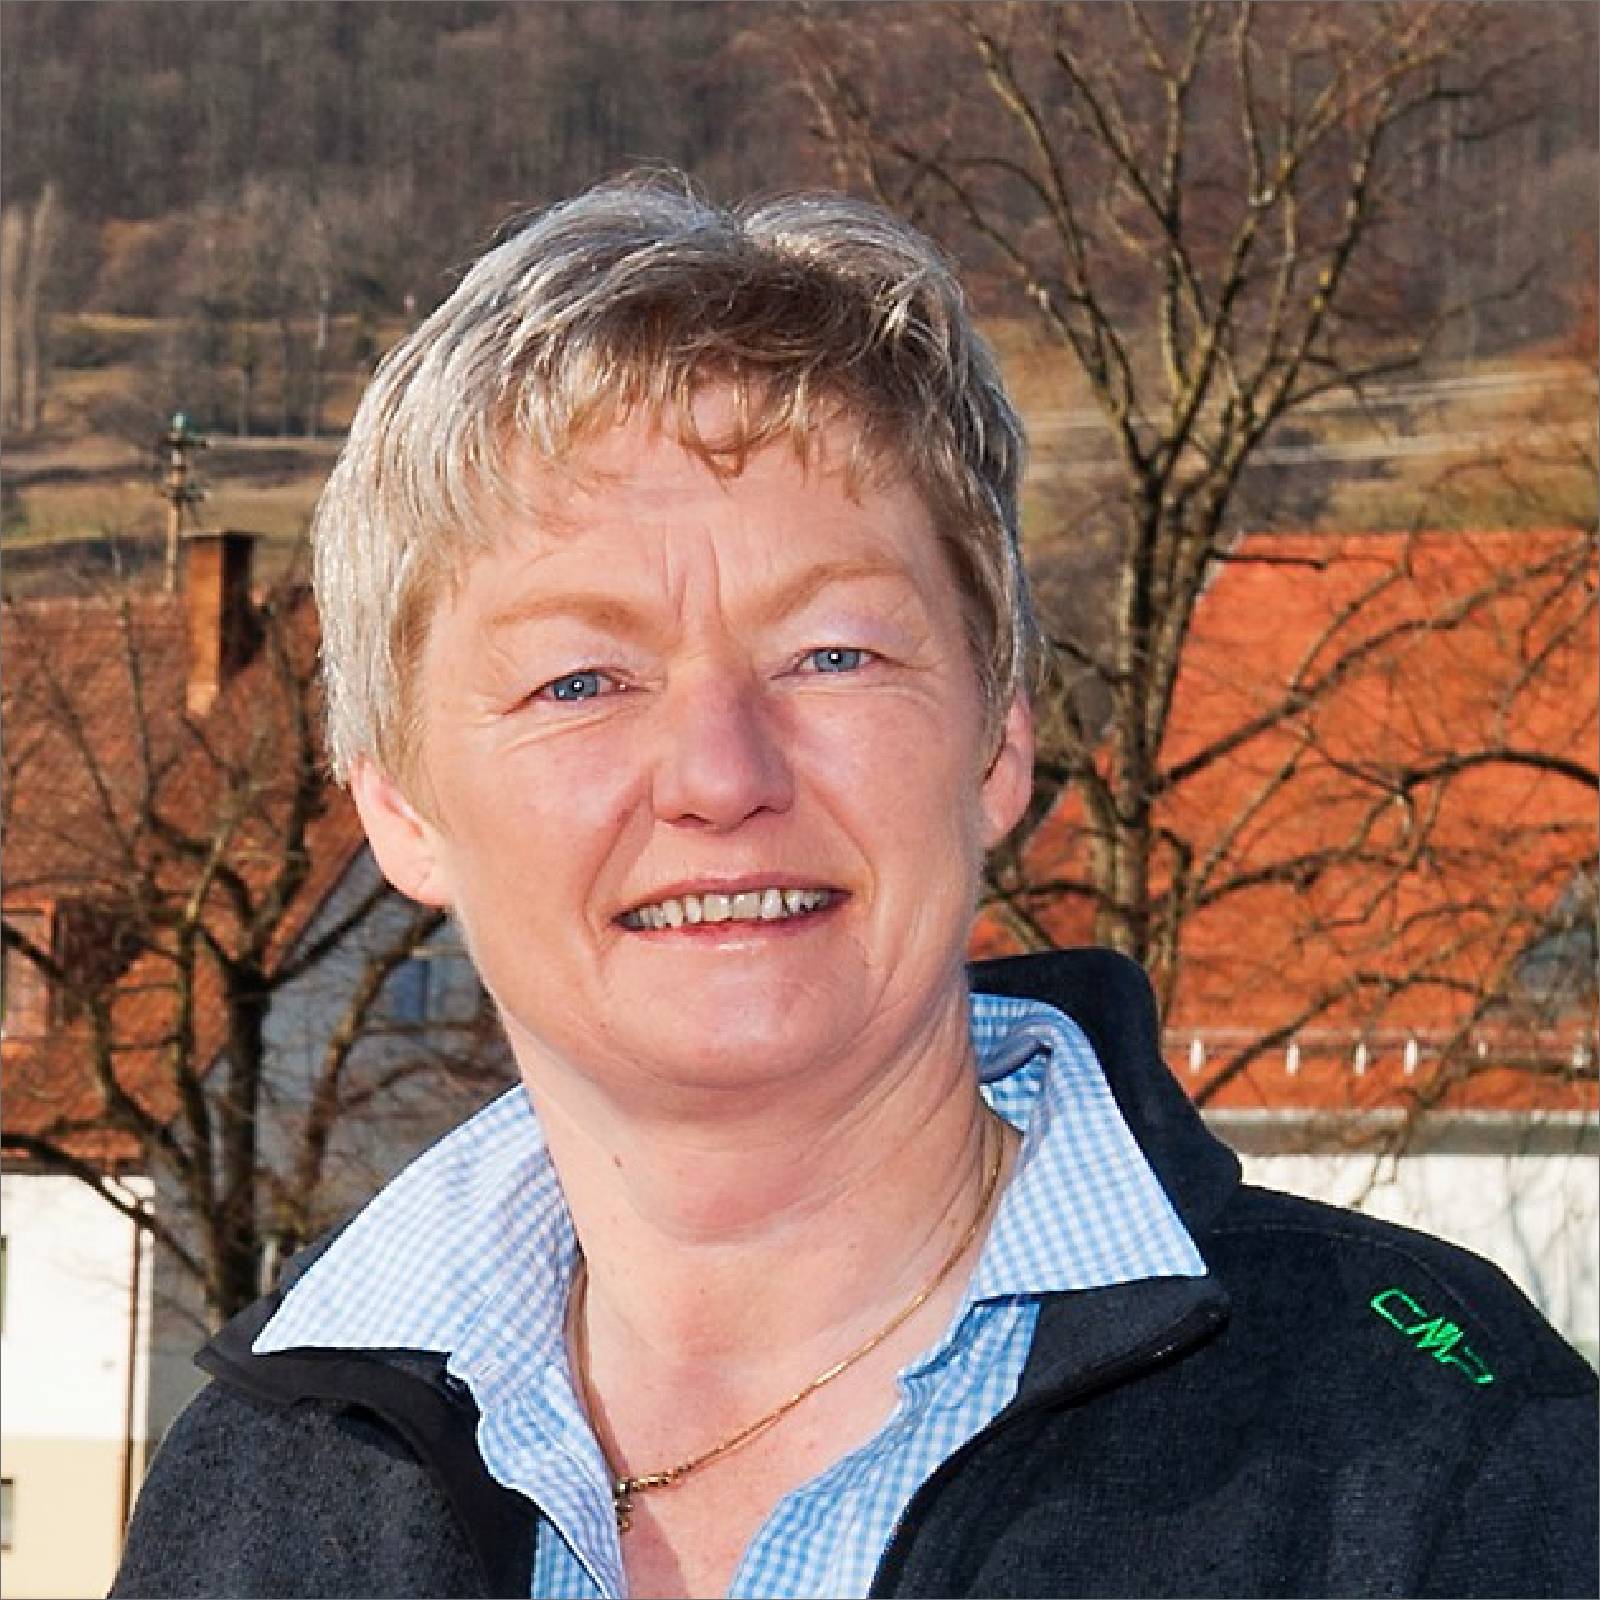 Biosphärenbotschafterin: Maria Stollmeier